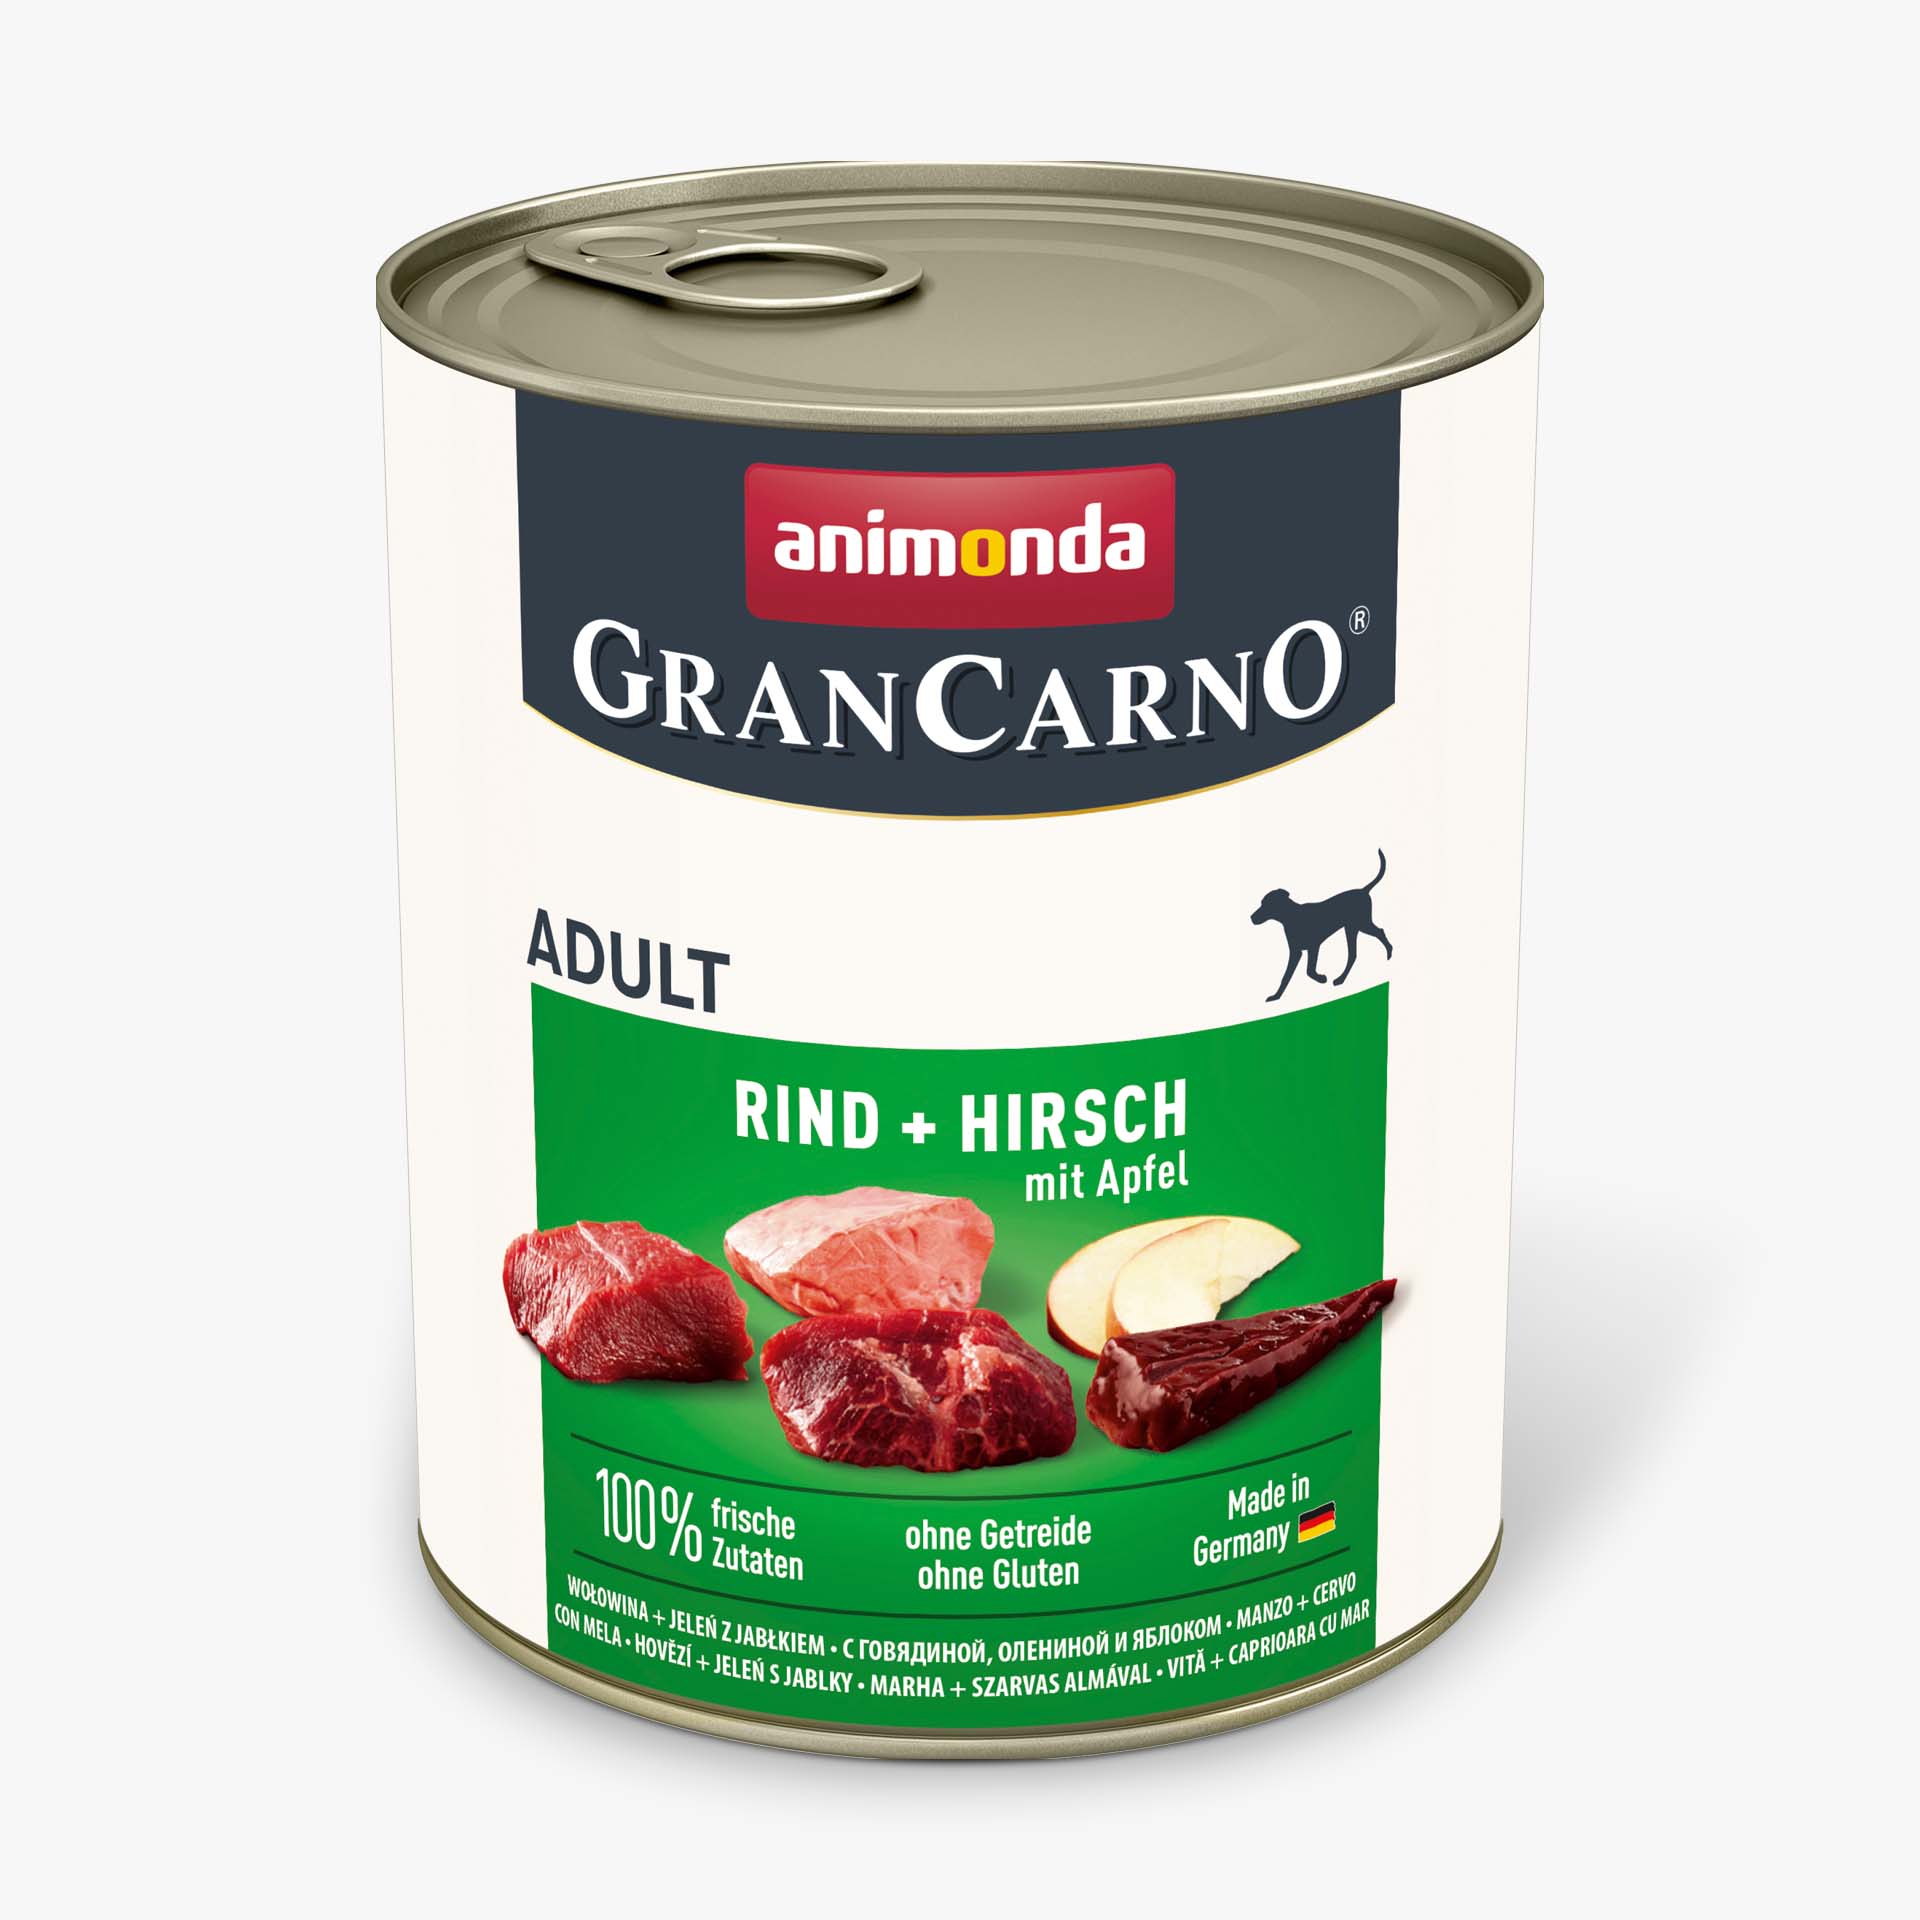 Animonda Grancarno Adult jelení maso + jablka 800g